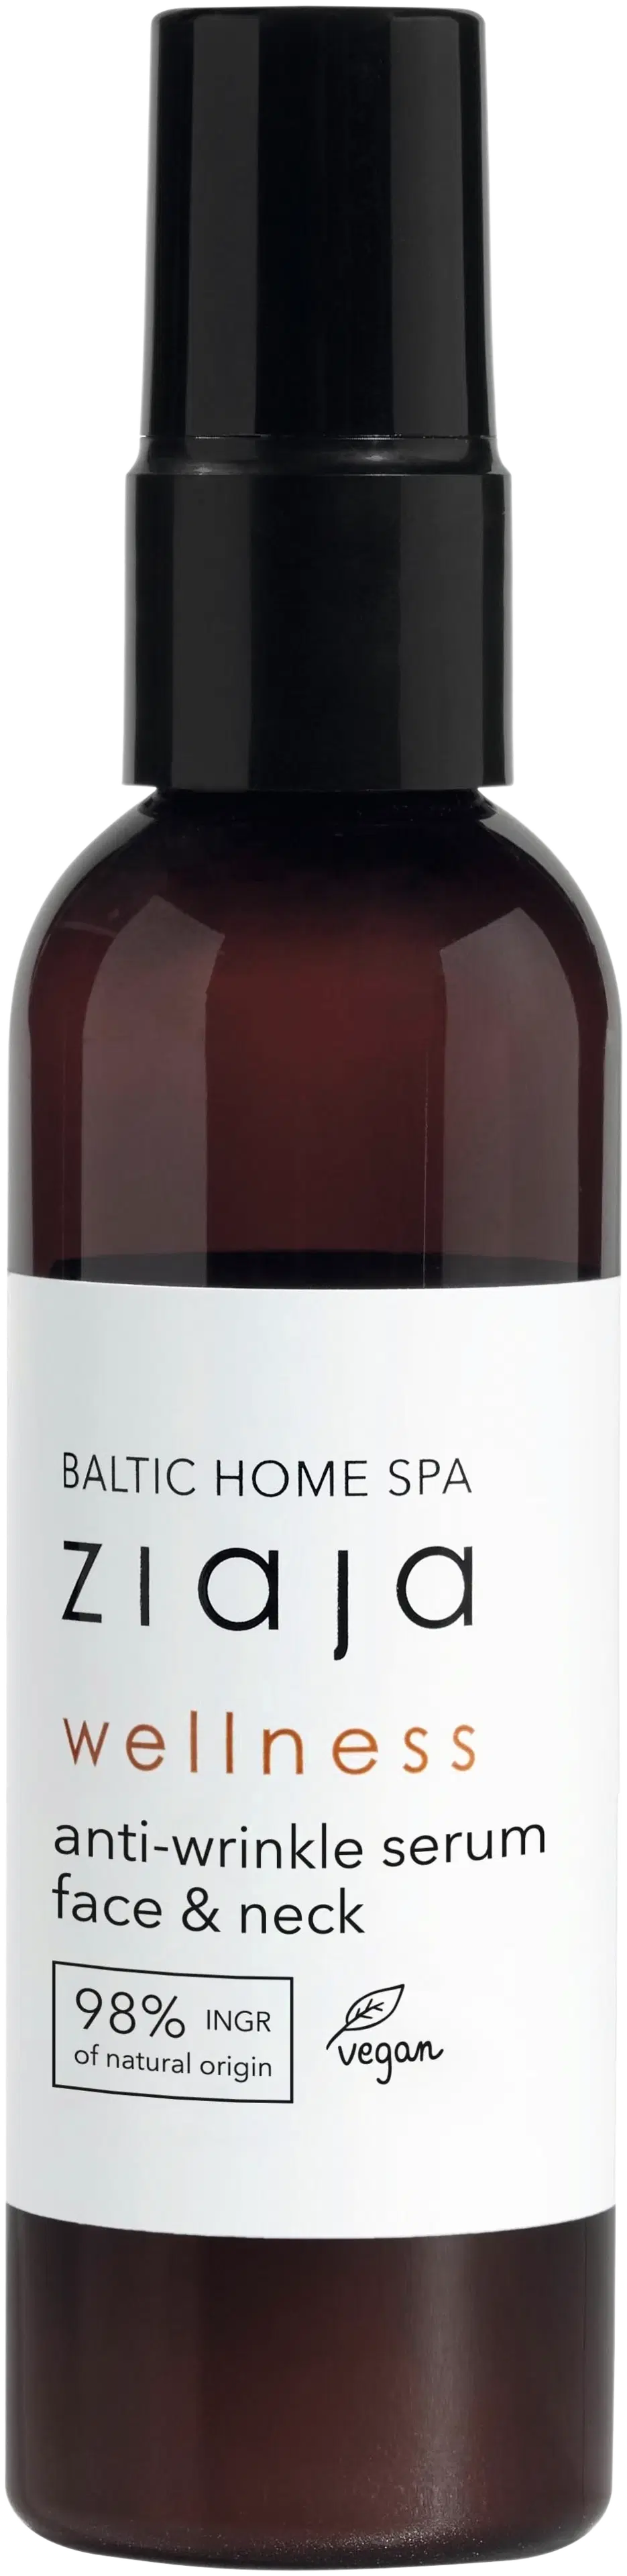 Ziaja Baltic Home Spa wellness kiinteyttävä seerumi 90 ml